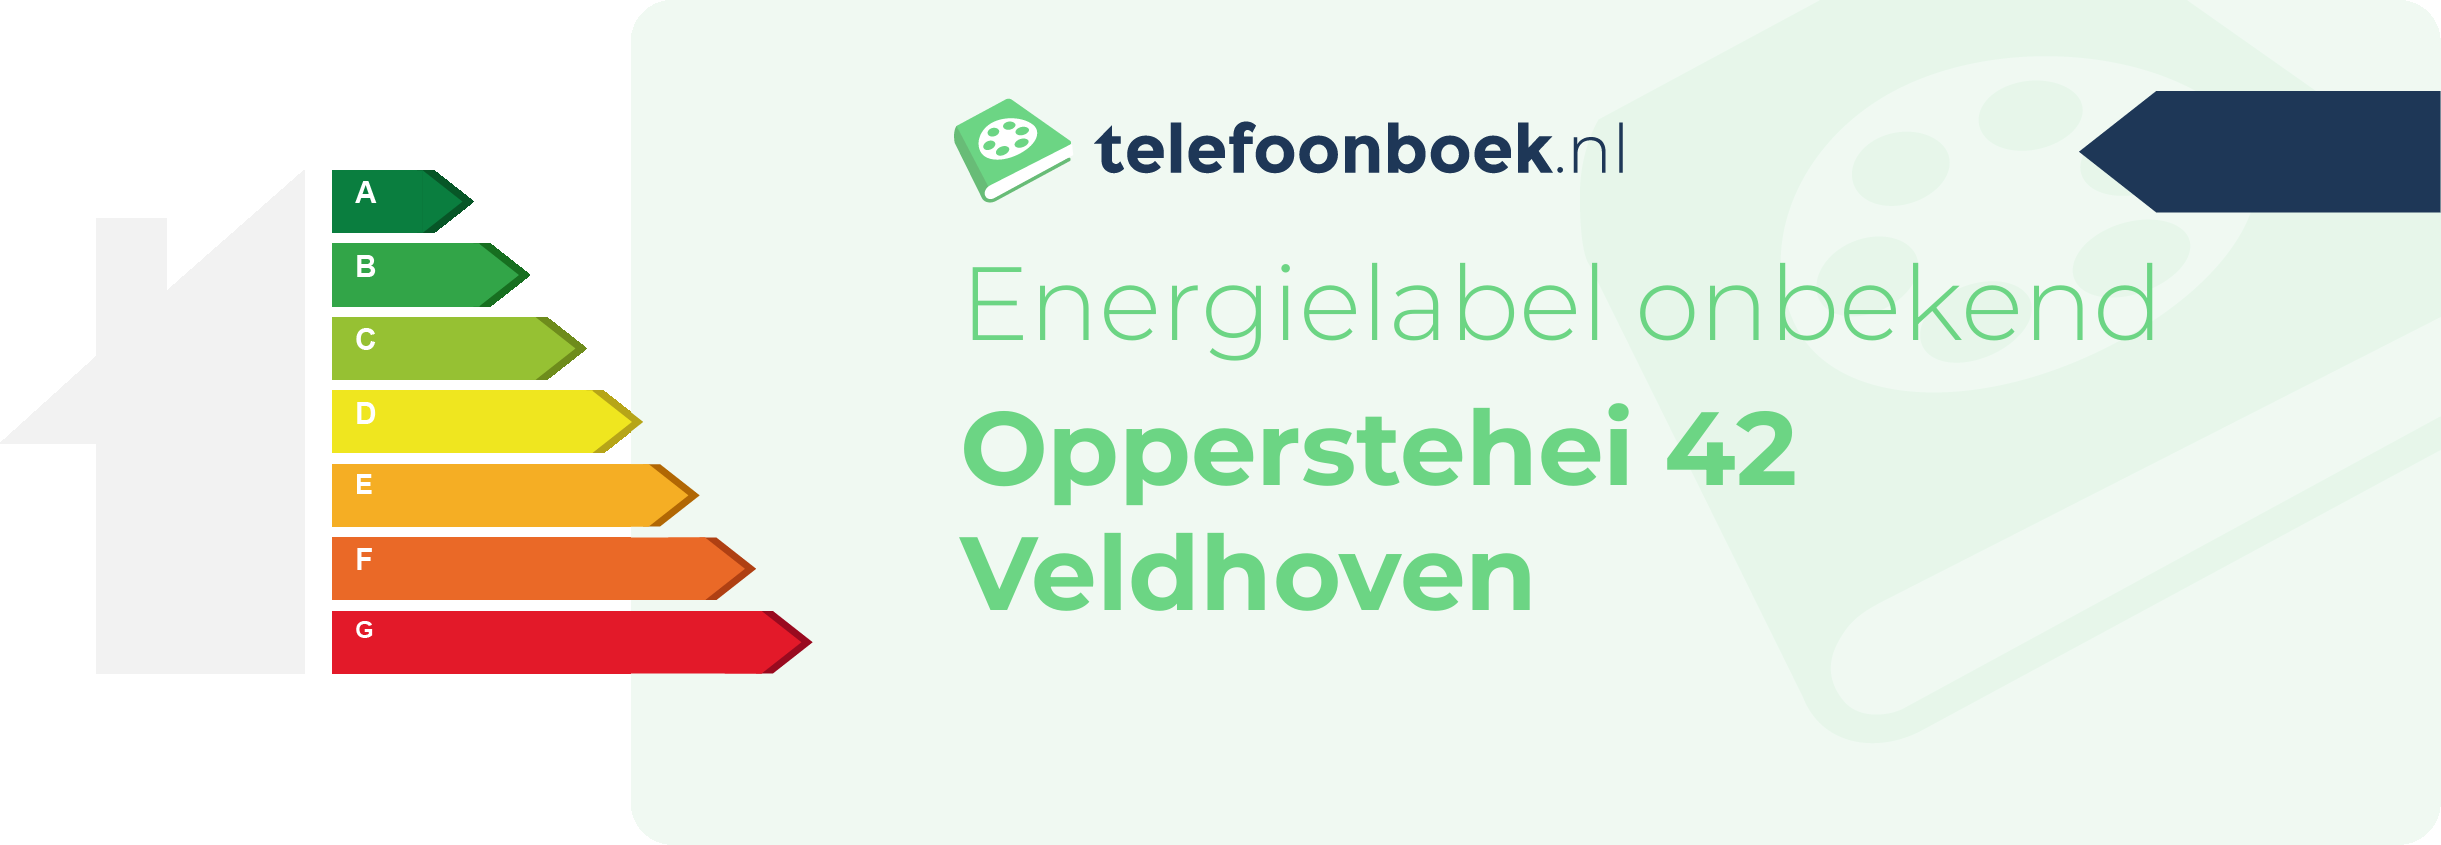 Energielabel Opperstehei 42 Veldhoven